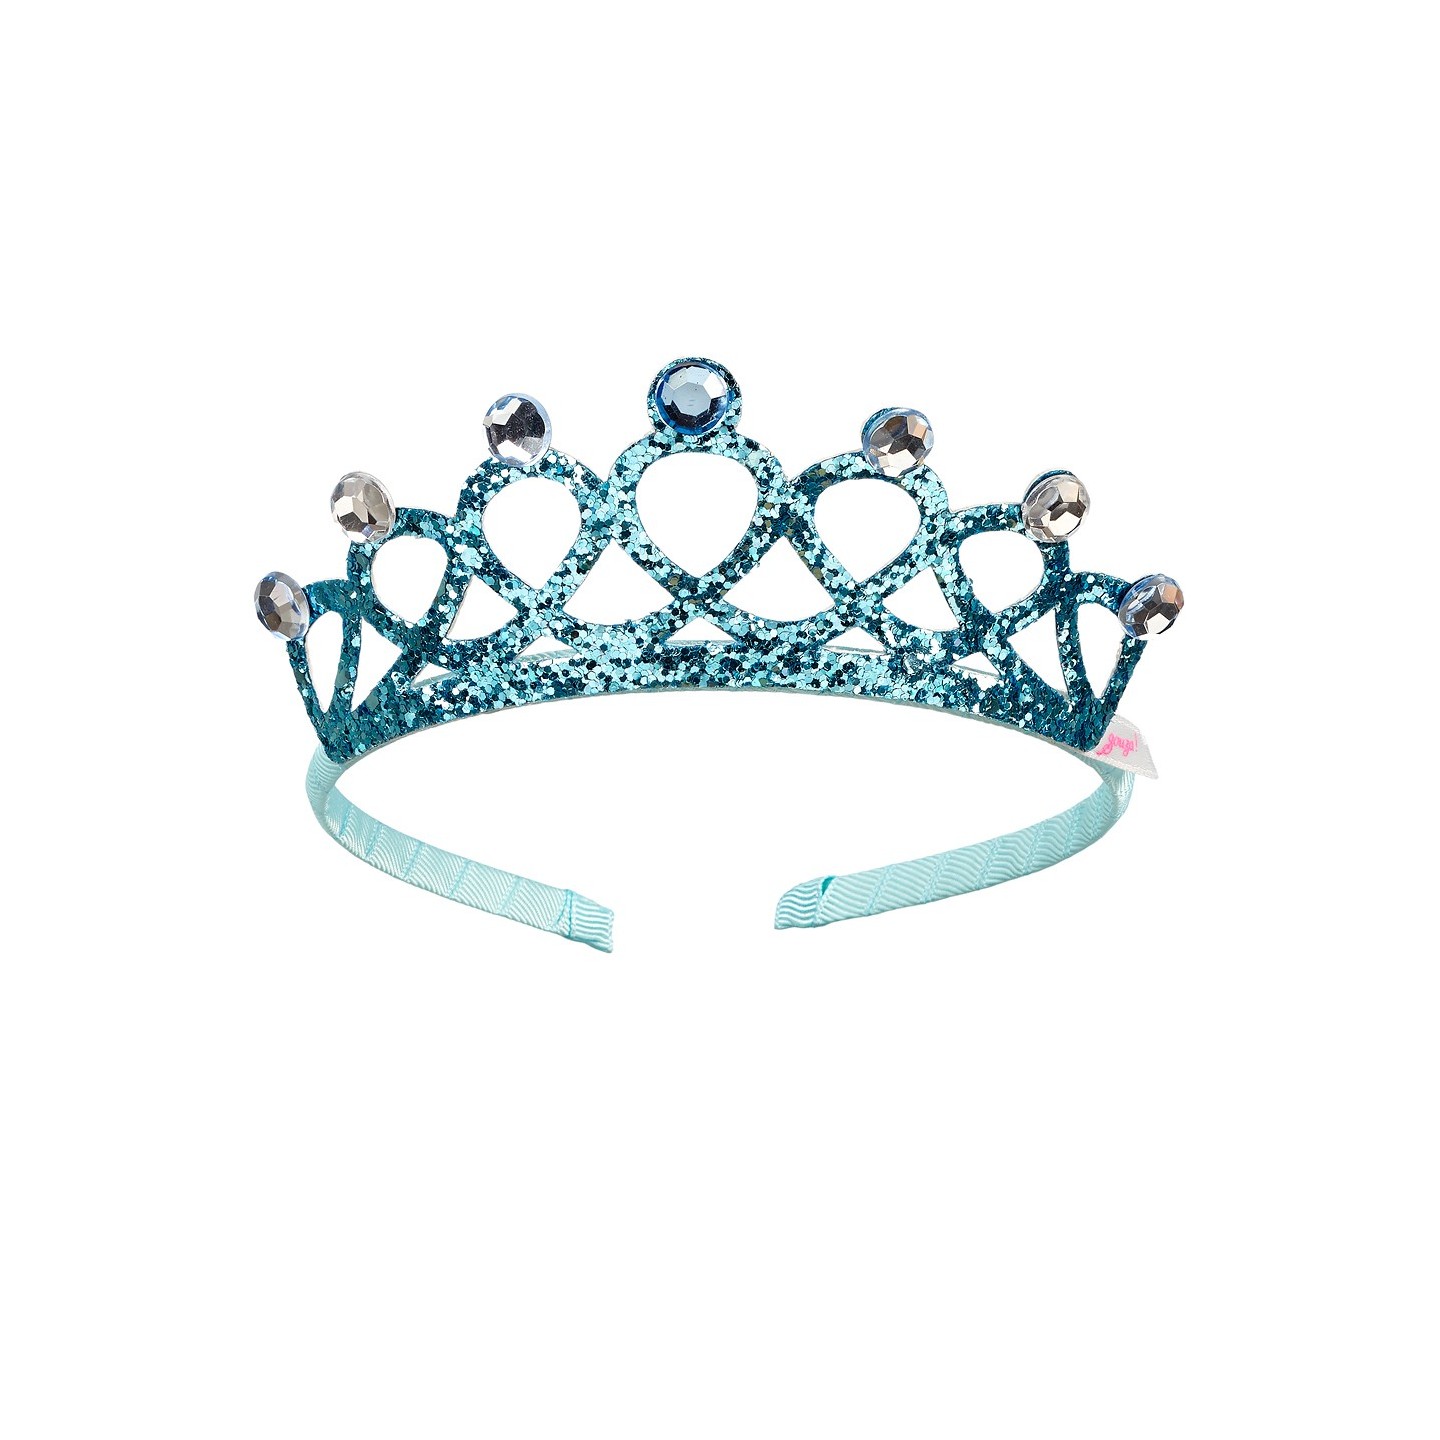 blauw Prinsessen kroontje kind tiara diadeem